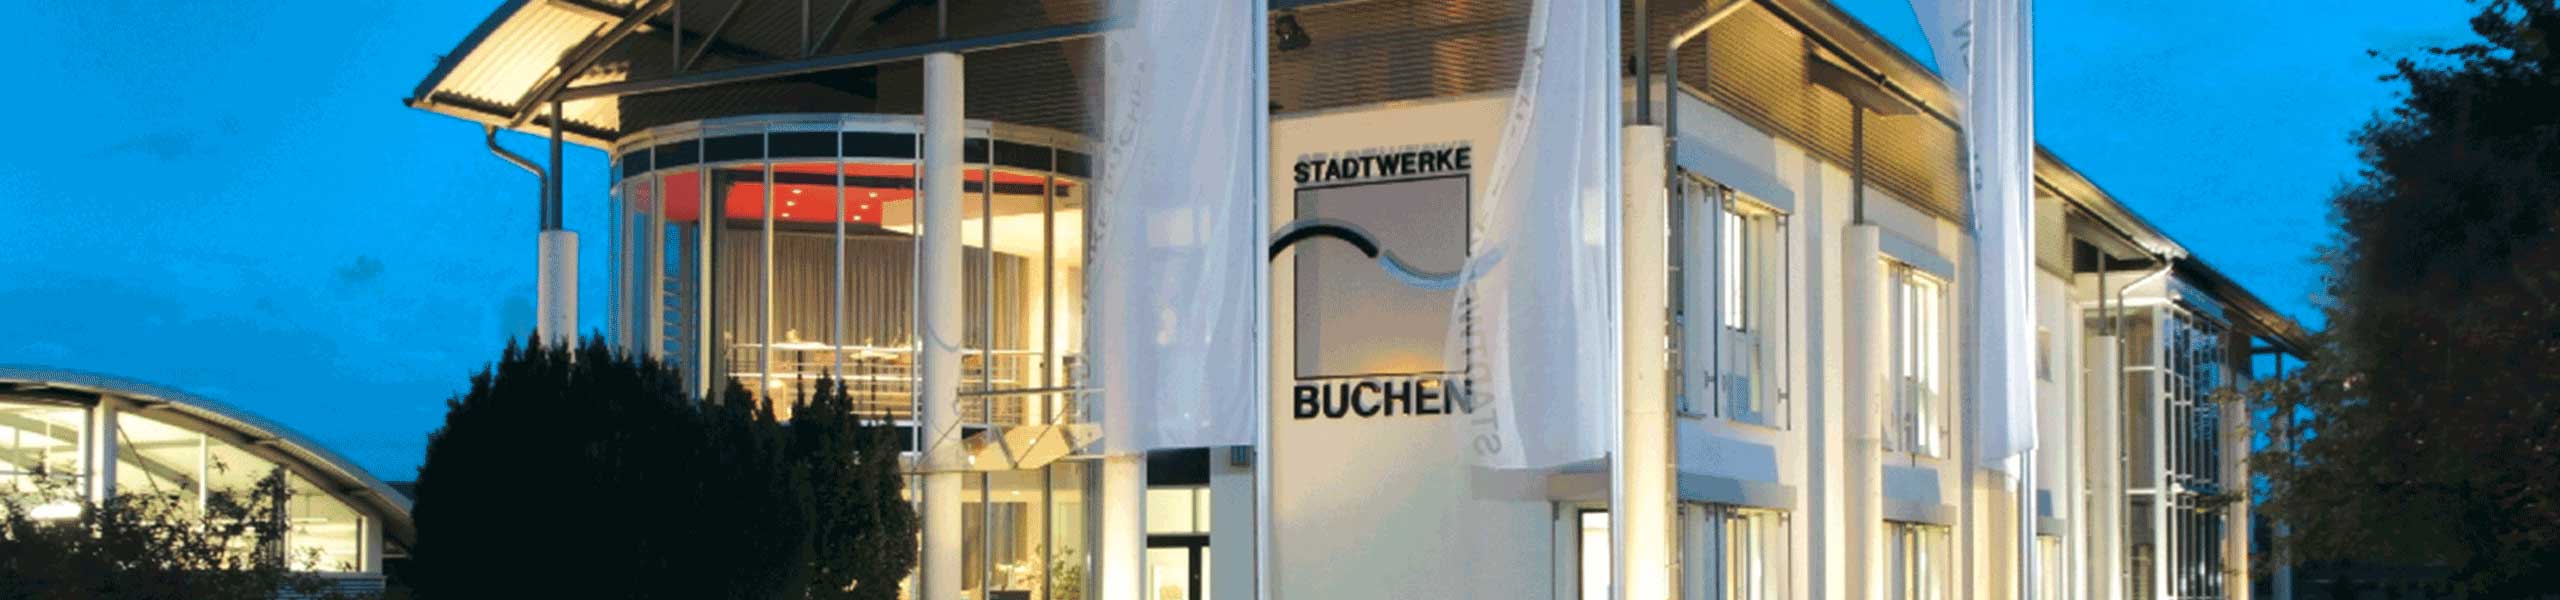 Stadtwerke Buchen GmbH & Co KG - Stromanschluss